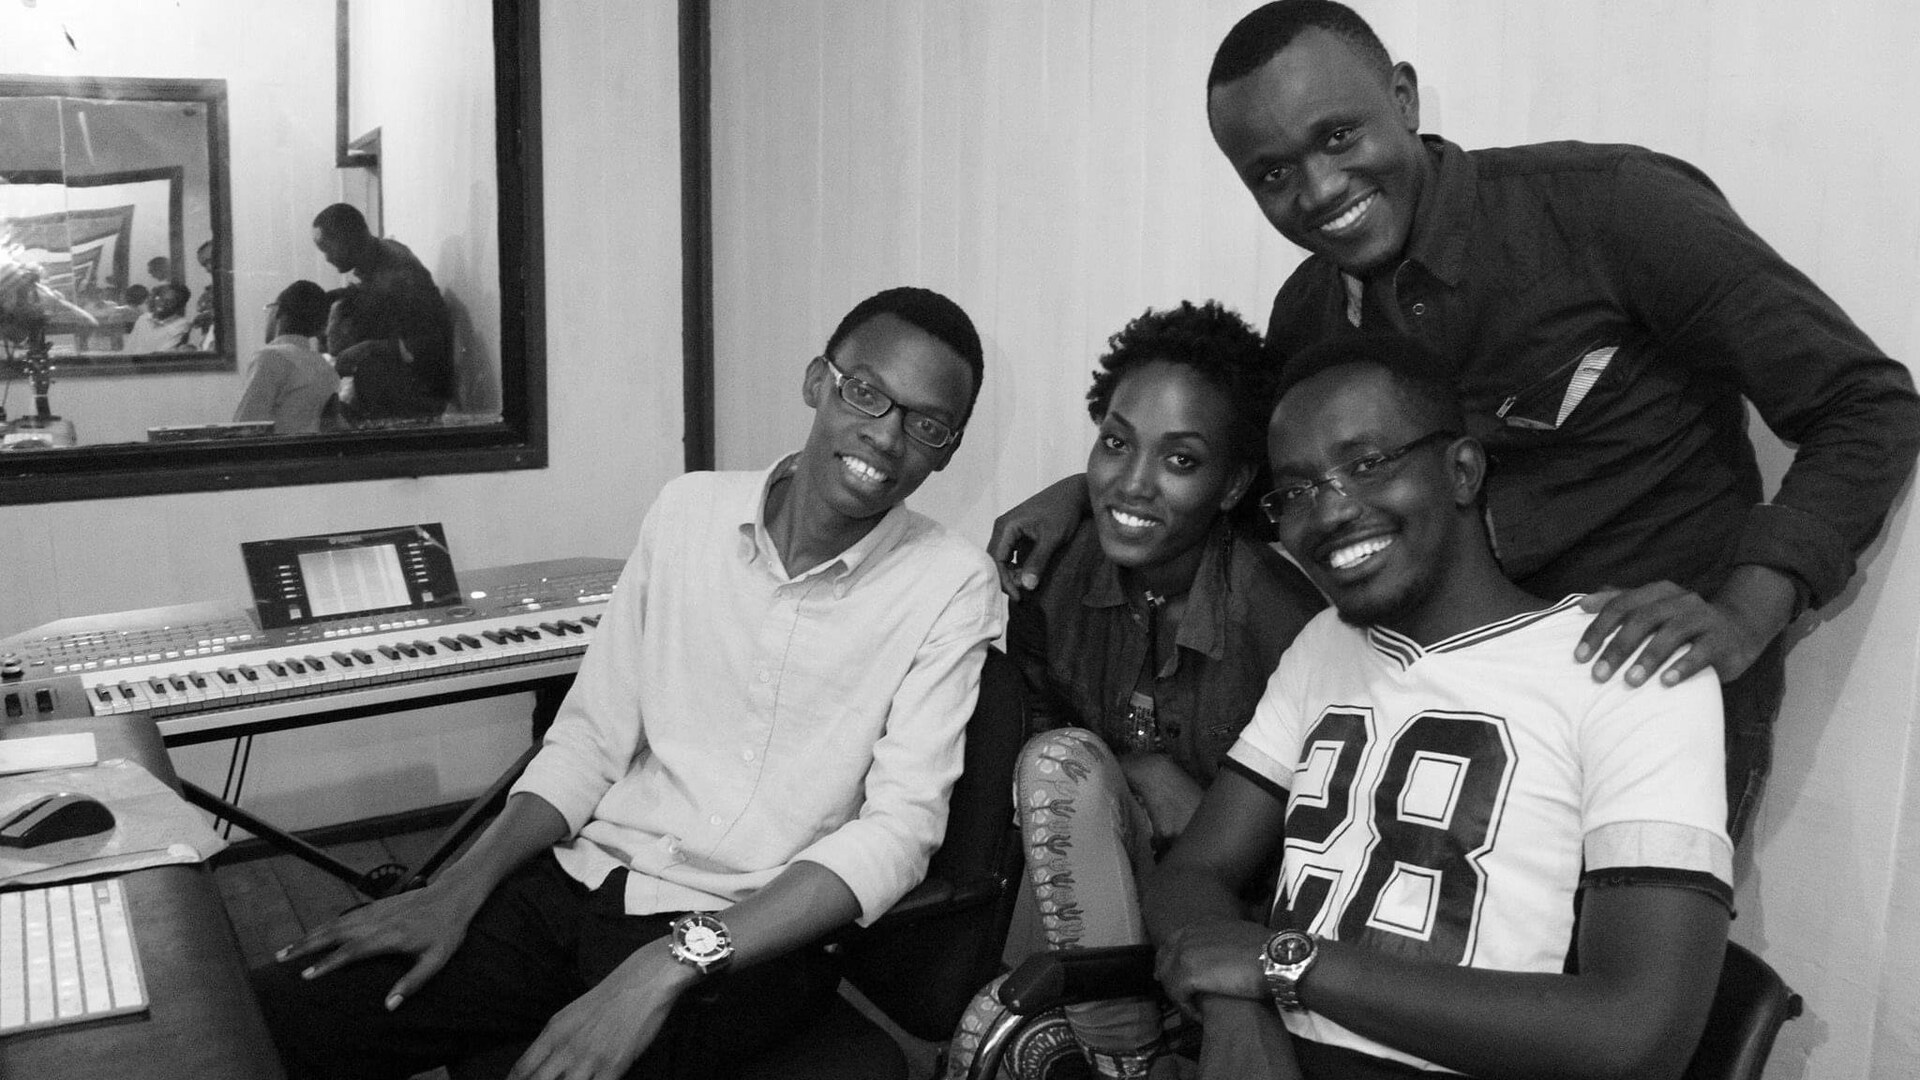 La chanteuse Nyenimana dans un studio d'enregistrement au Burundi. Elle est entourée de trois musiciens.